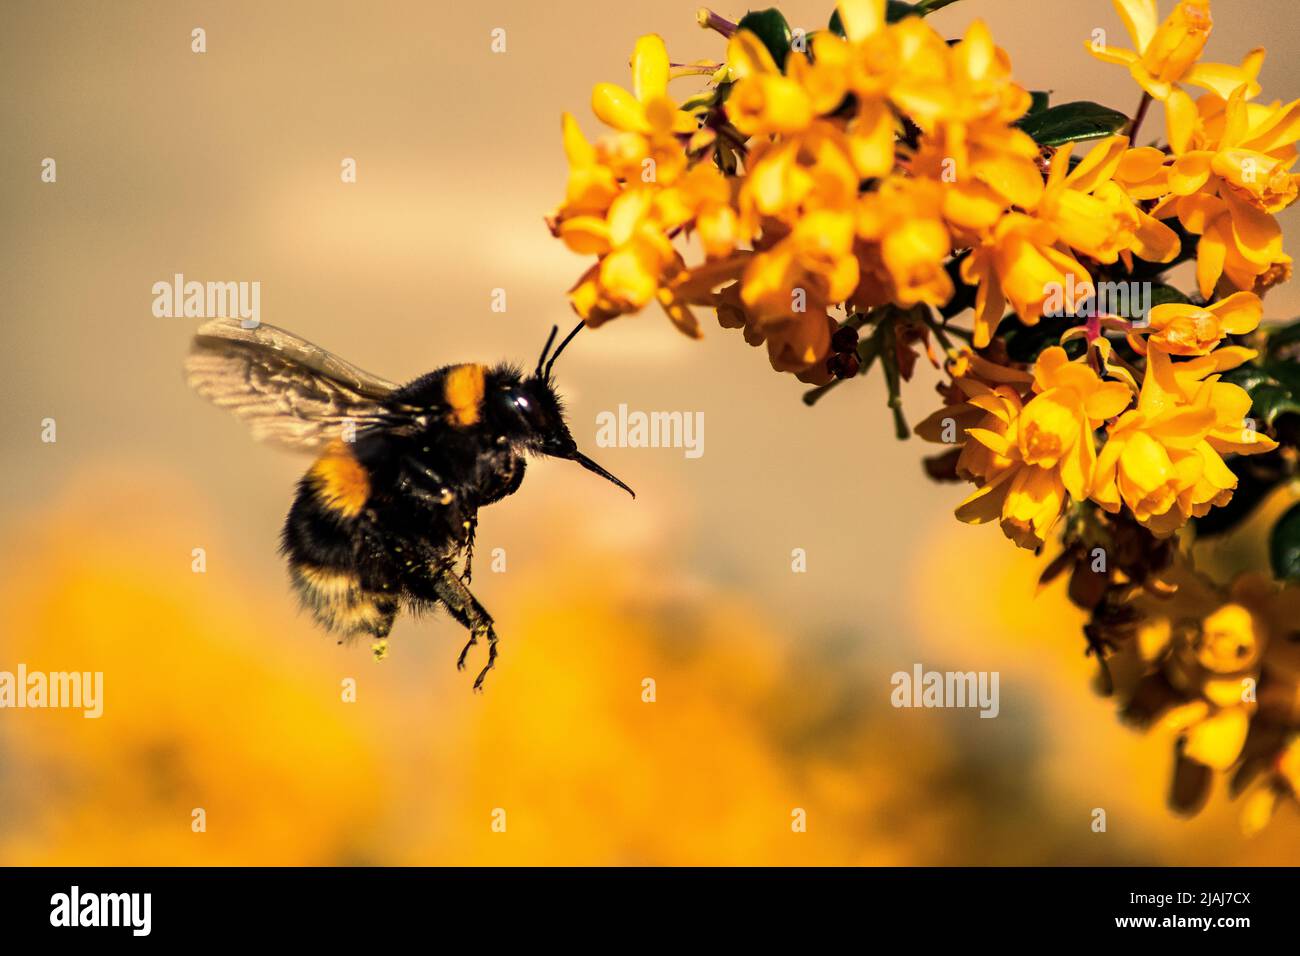 Bumblebee flying on yellow flowers Stock Photo